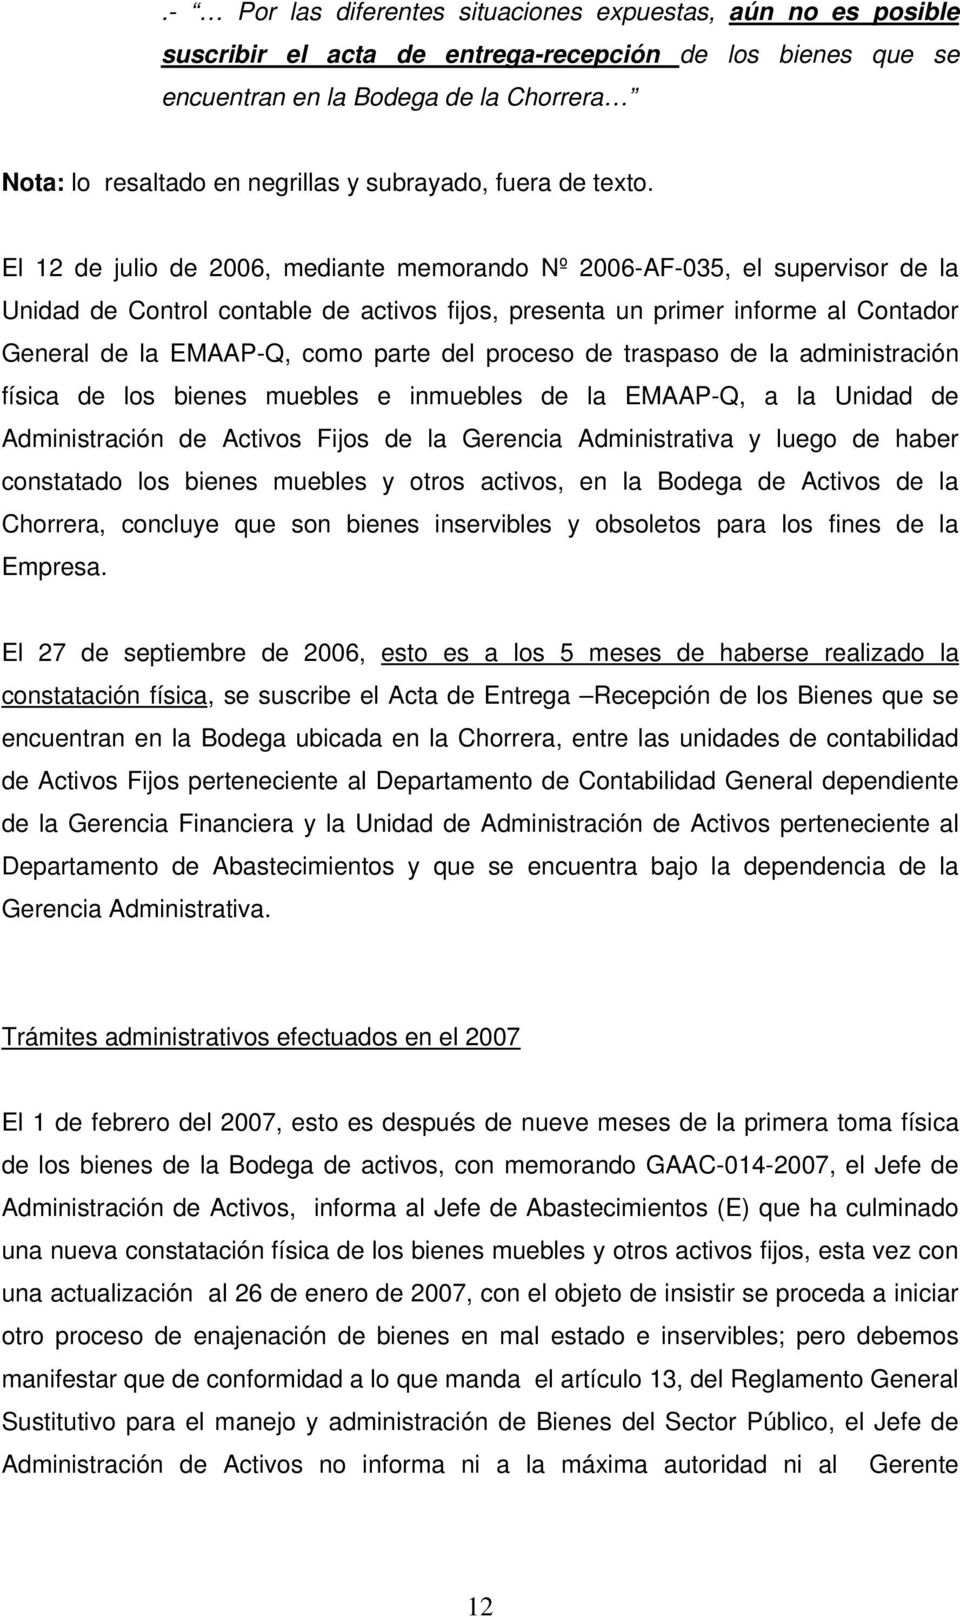 El 12 de julio de 2006, mediante memorando Nº 2006-AF-035, el supervisor de la Unidad de Control contable de activos fijos, presenta un primer informe al Contador General de la EMAAP-Q, como parte